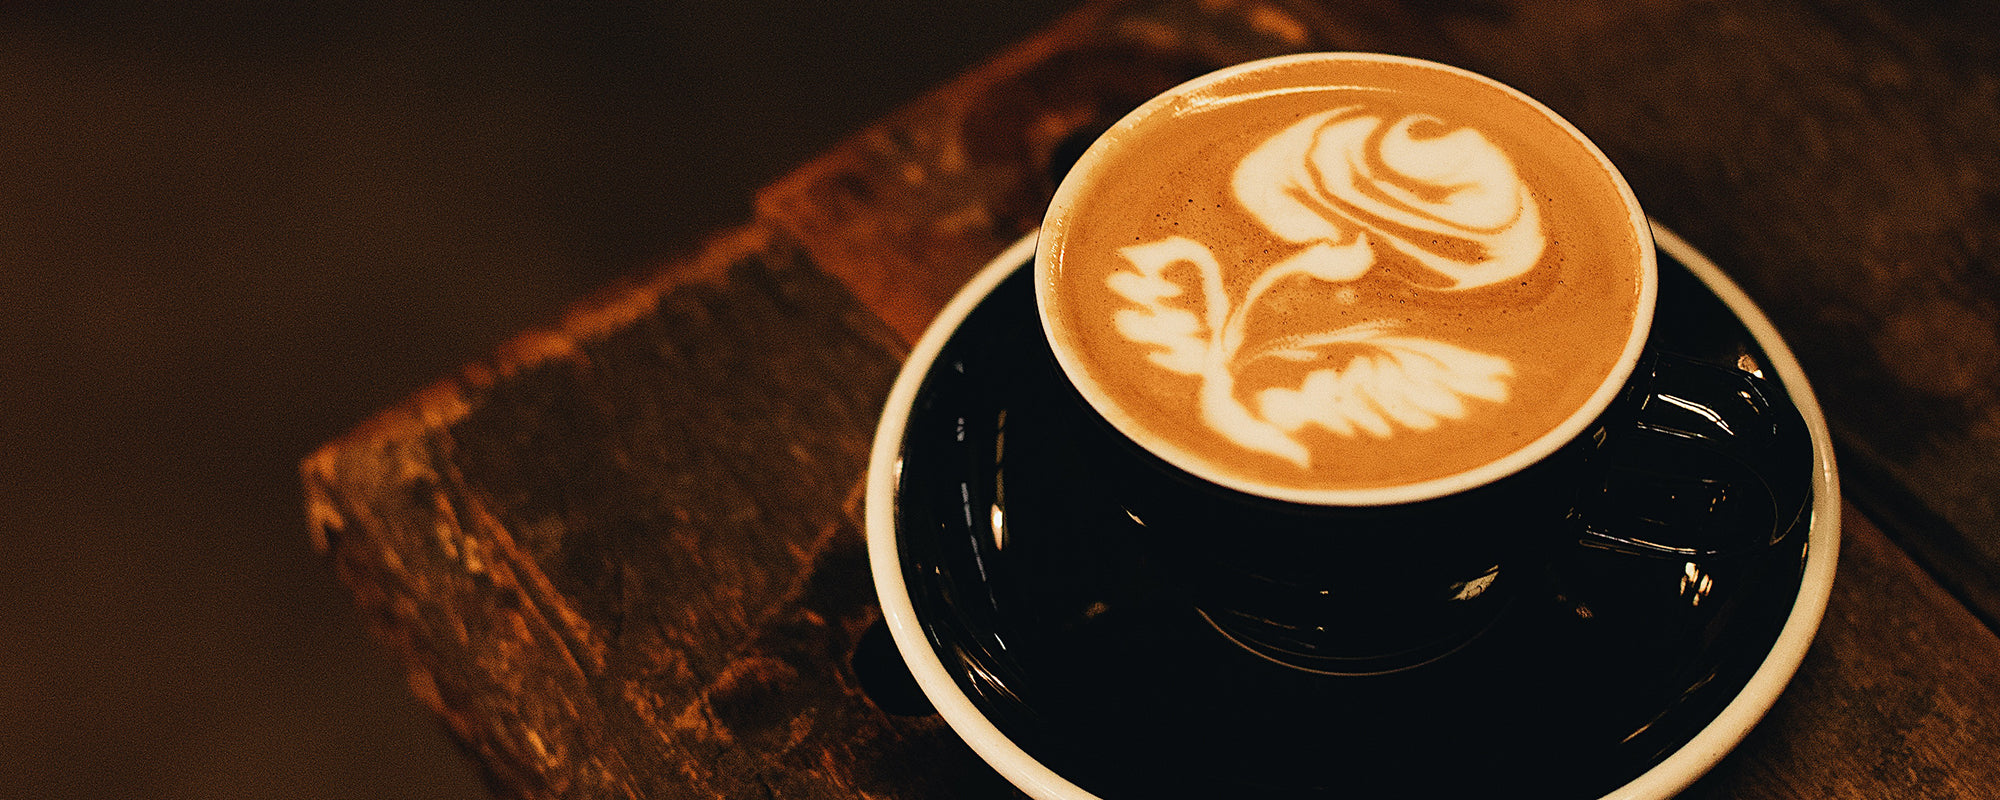 Specialty Coffee Latte Art